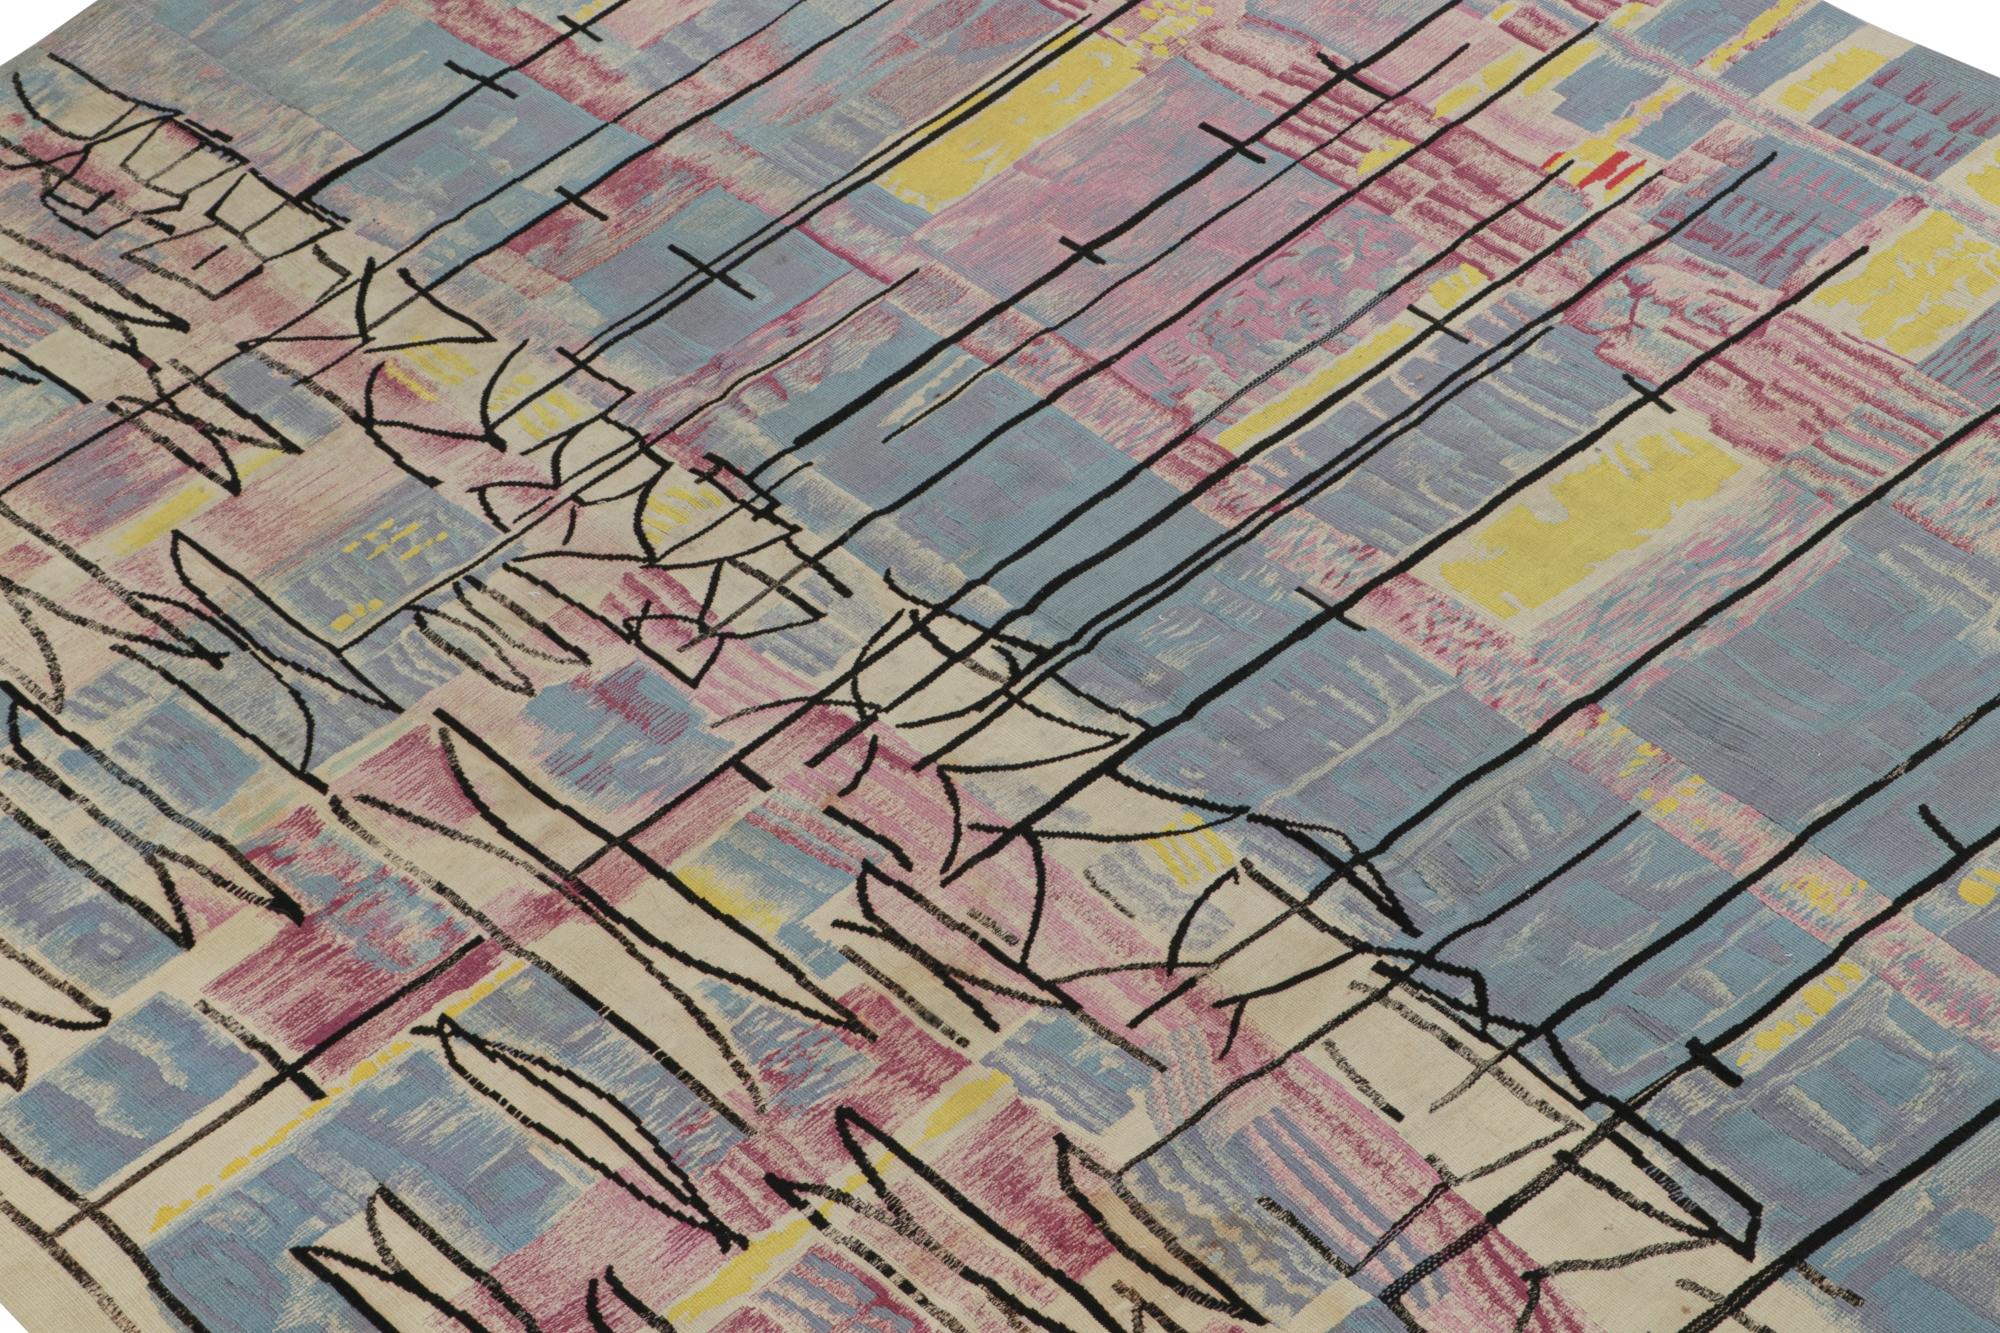 Dieser handgewebte französische Wandteppich im Format 5x7 aus Wolle (ca. 1950-1960) stammt vermutlich aus den seltenen abstrakten Textilien von Etienne Porier - eine aufregende neue Kuration aus unserer European Collection'S.

Über das